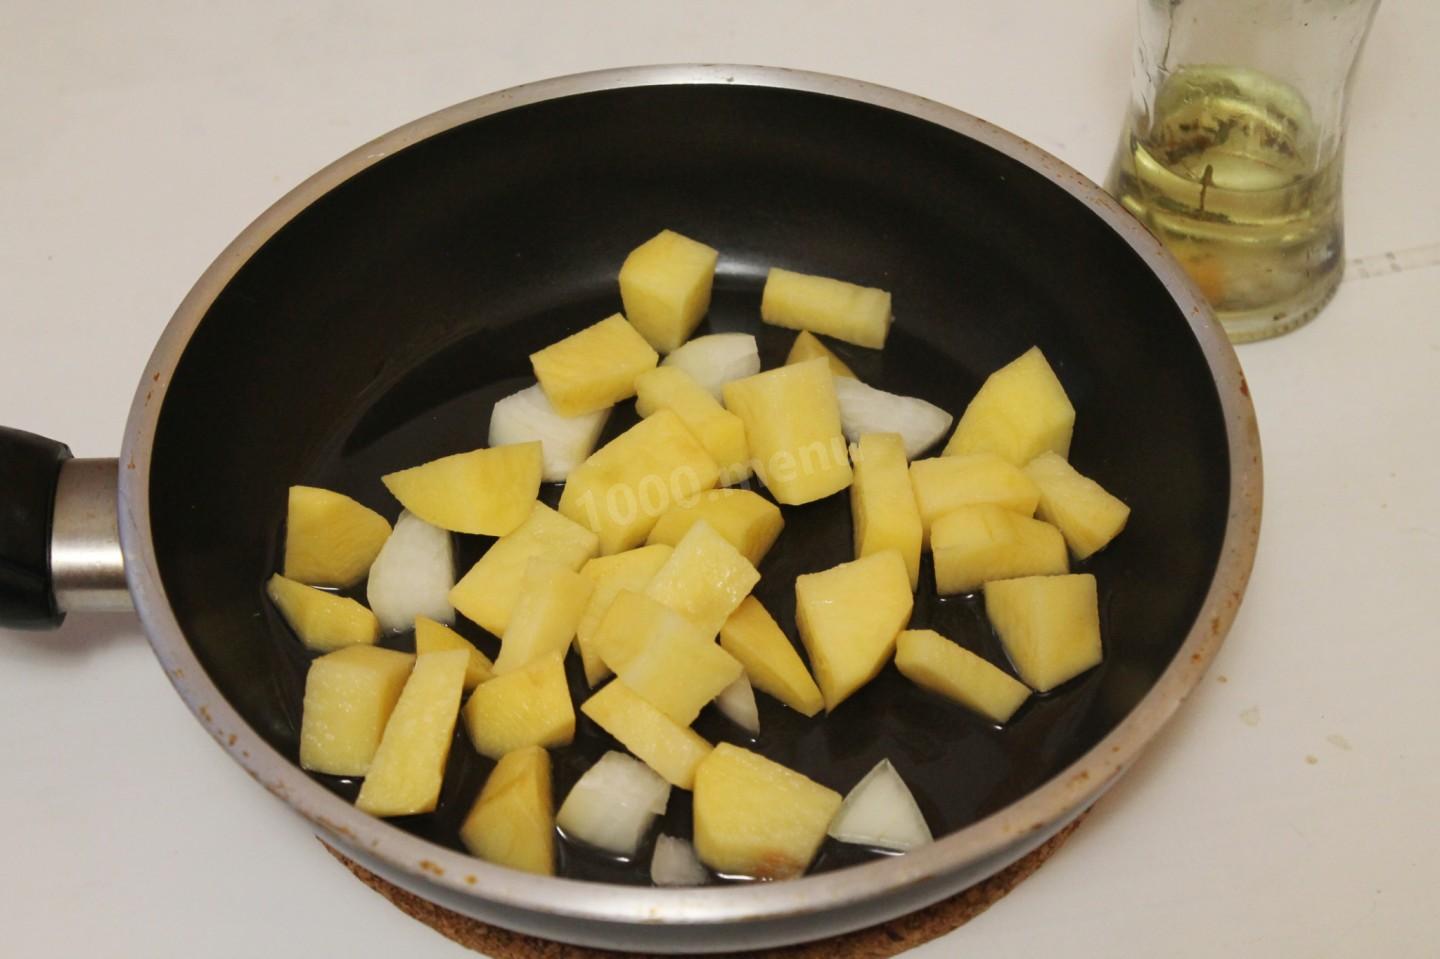 Картошка в кожуре на сковороде. Жареная картошка с капустой на сковороде. Бурак с картошкой капустой поджарить на сковороде. Как пожарить картошку с капустой на сковороде. Что сделать с одной картошкой на сковородке за 5 минут.